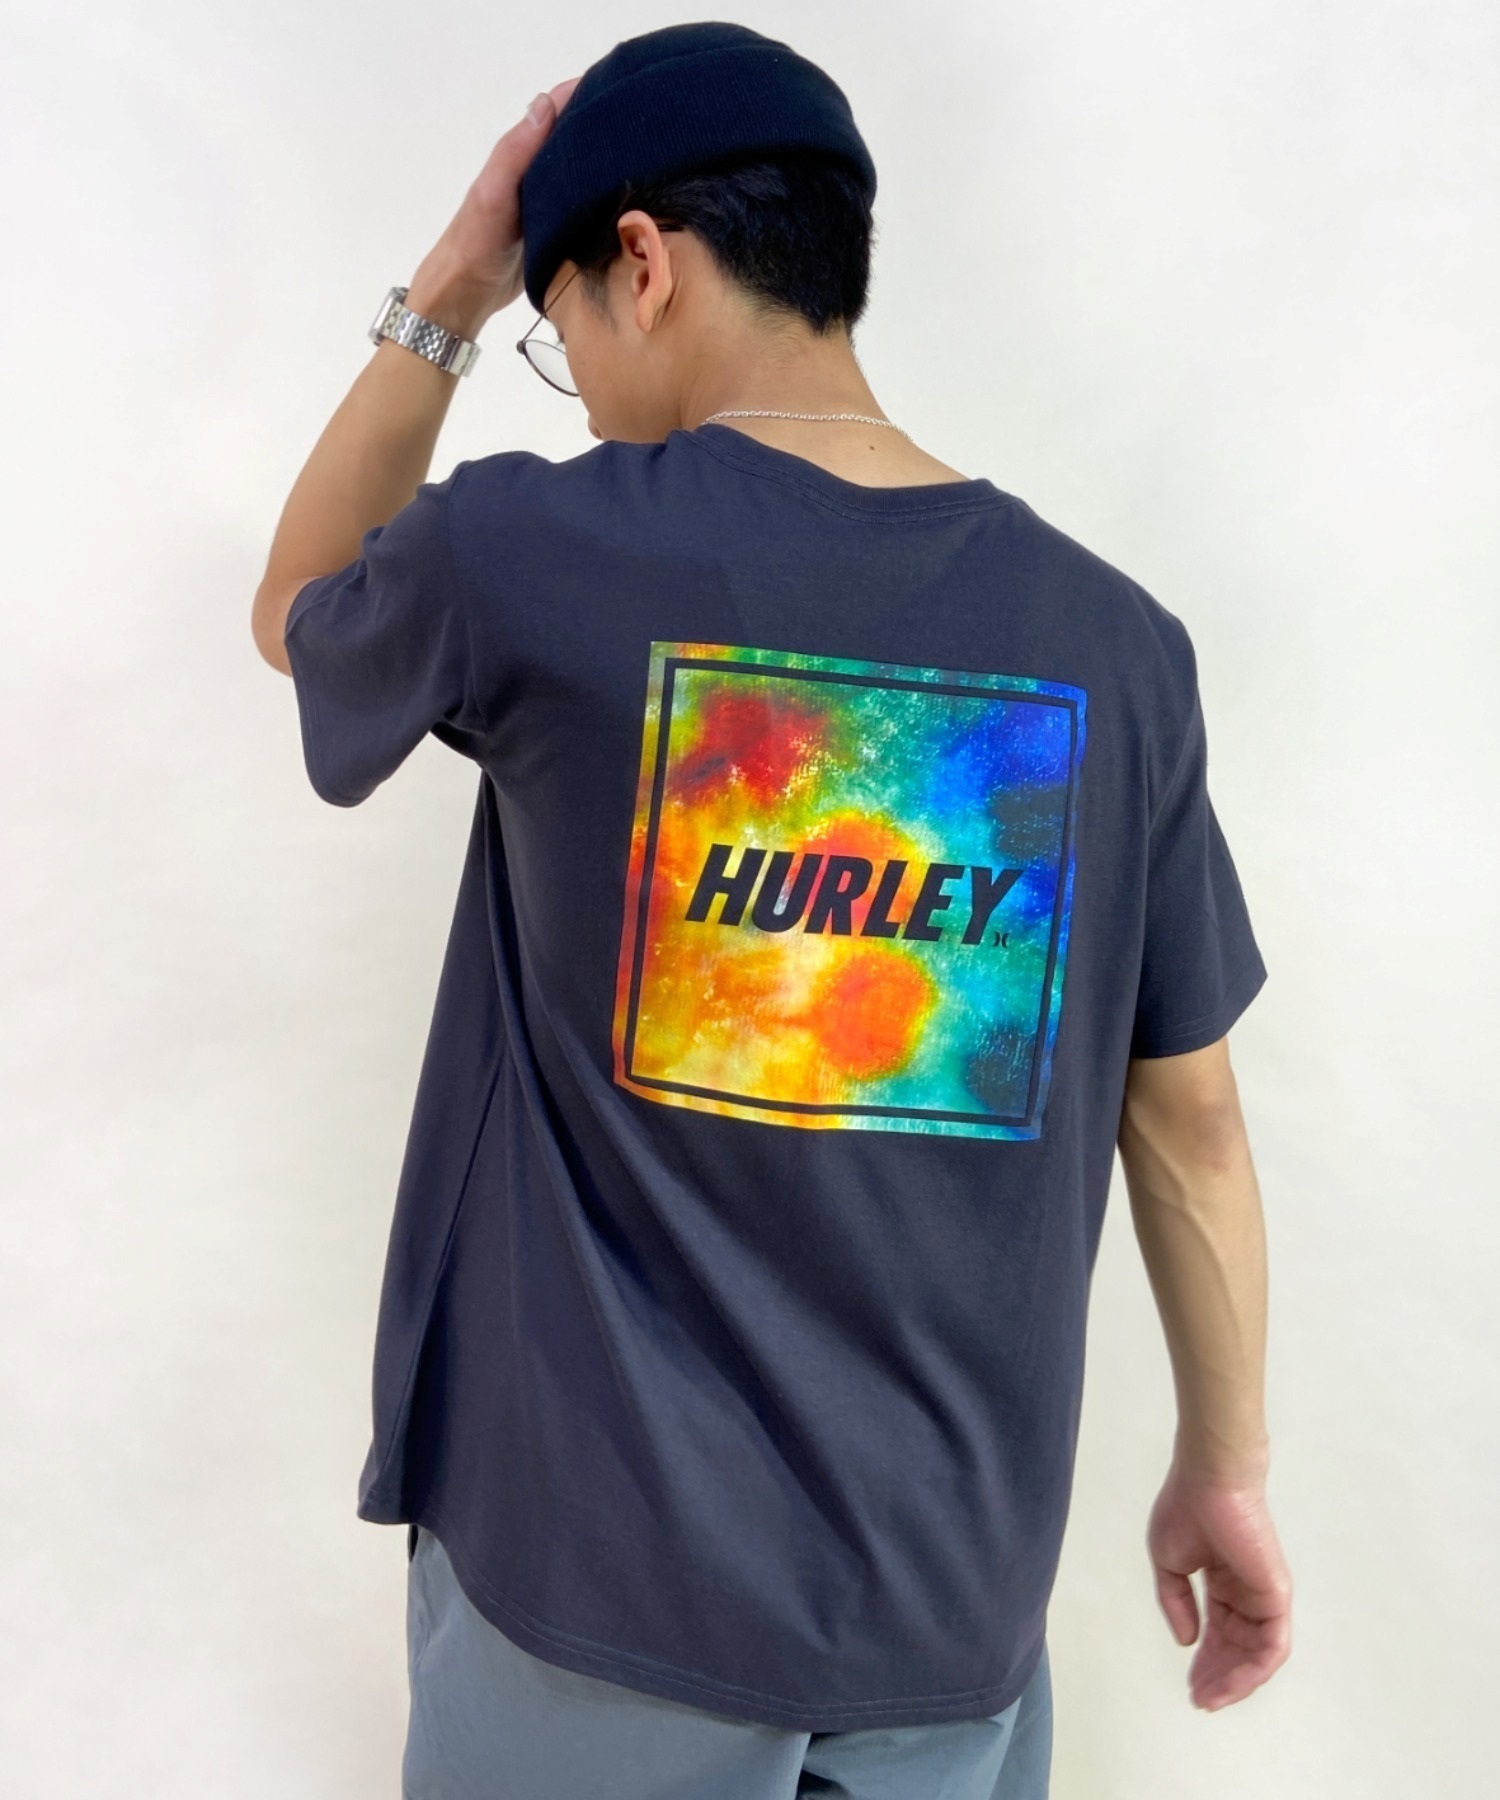 Hurley ハーレー MSS2200053 メンズ 半袖 Tシャツ ルーズシルエット スクエアロゴ バックプリントTシャツ ムラサキスポーツ限定(CGY-M)